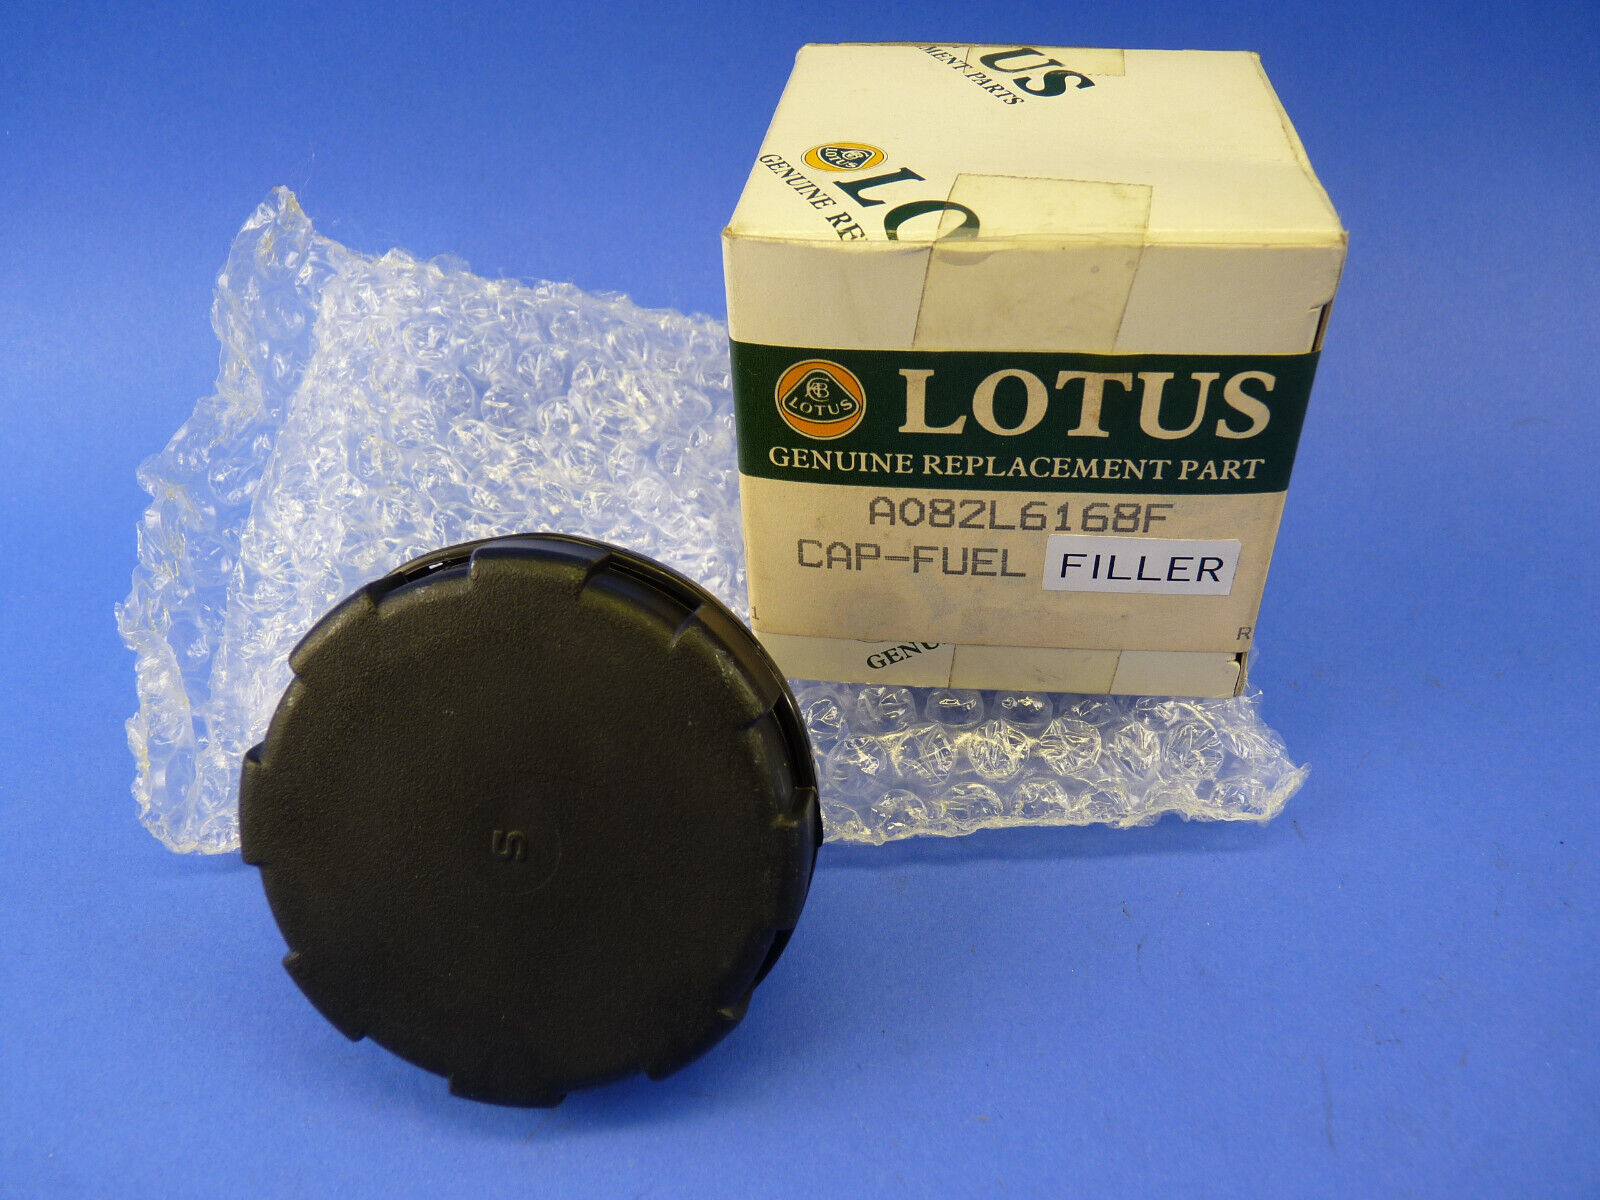 Lotus NOS Esprit Turbo fuel filler cap A082L6168F